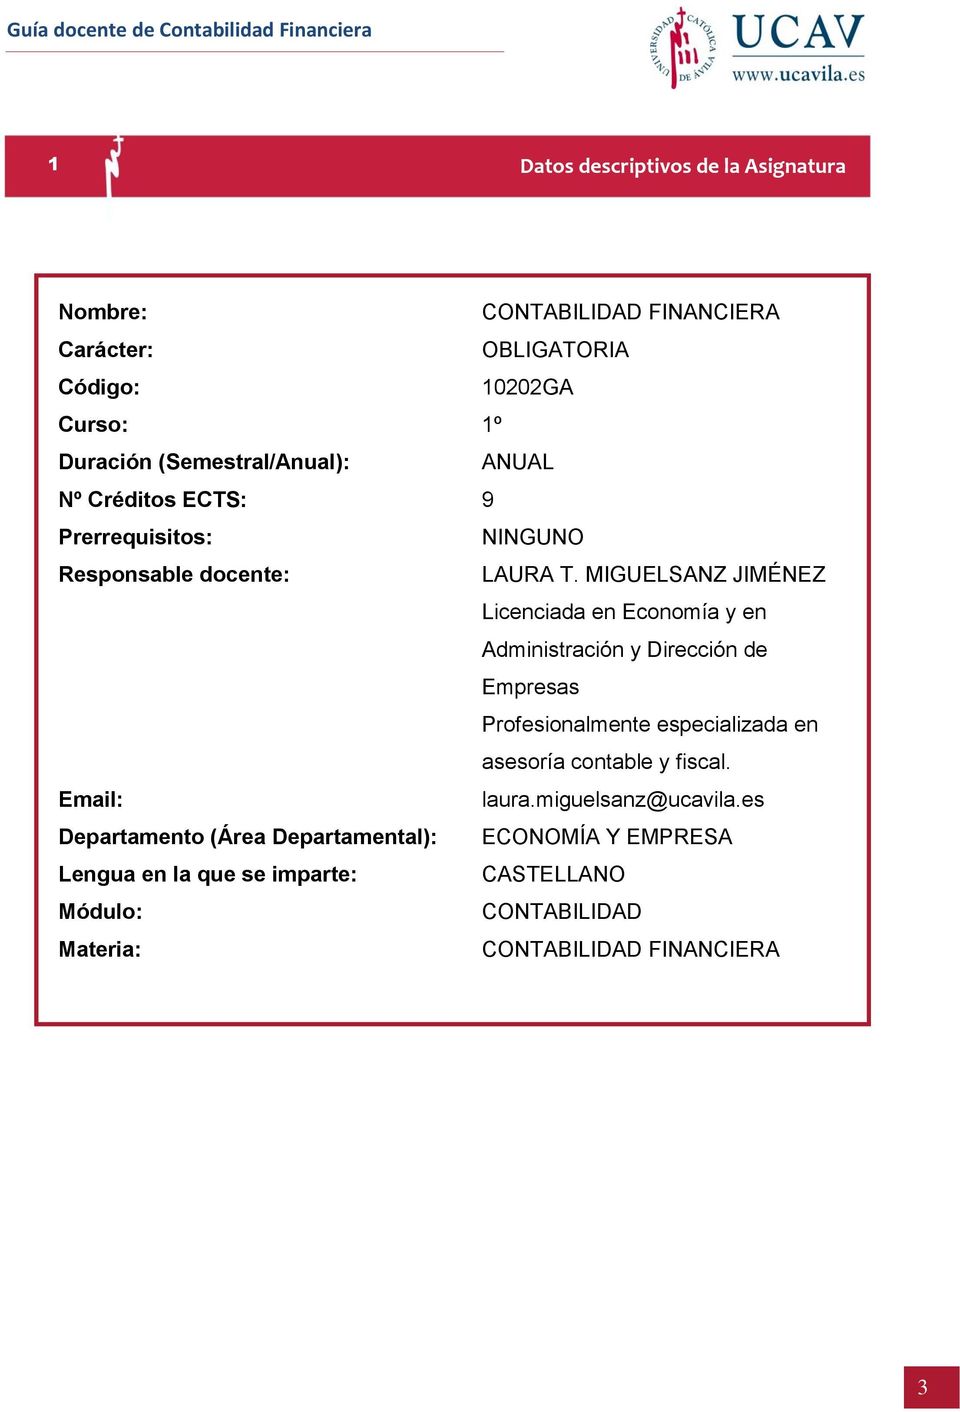 MIGUELSANZ JIMÉNEZ Licenciada en Economía y en Administración y Dirección de Empresas Profesionalmente especializada en asesoría contable